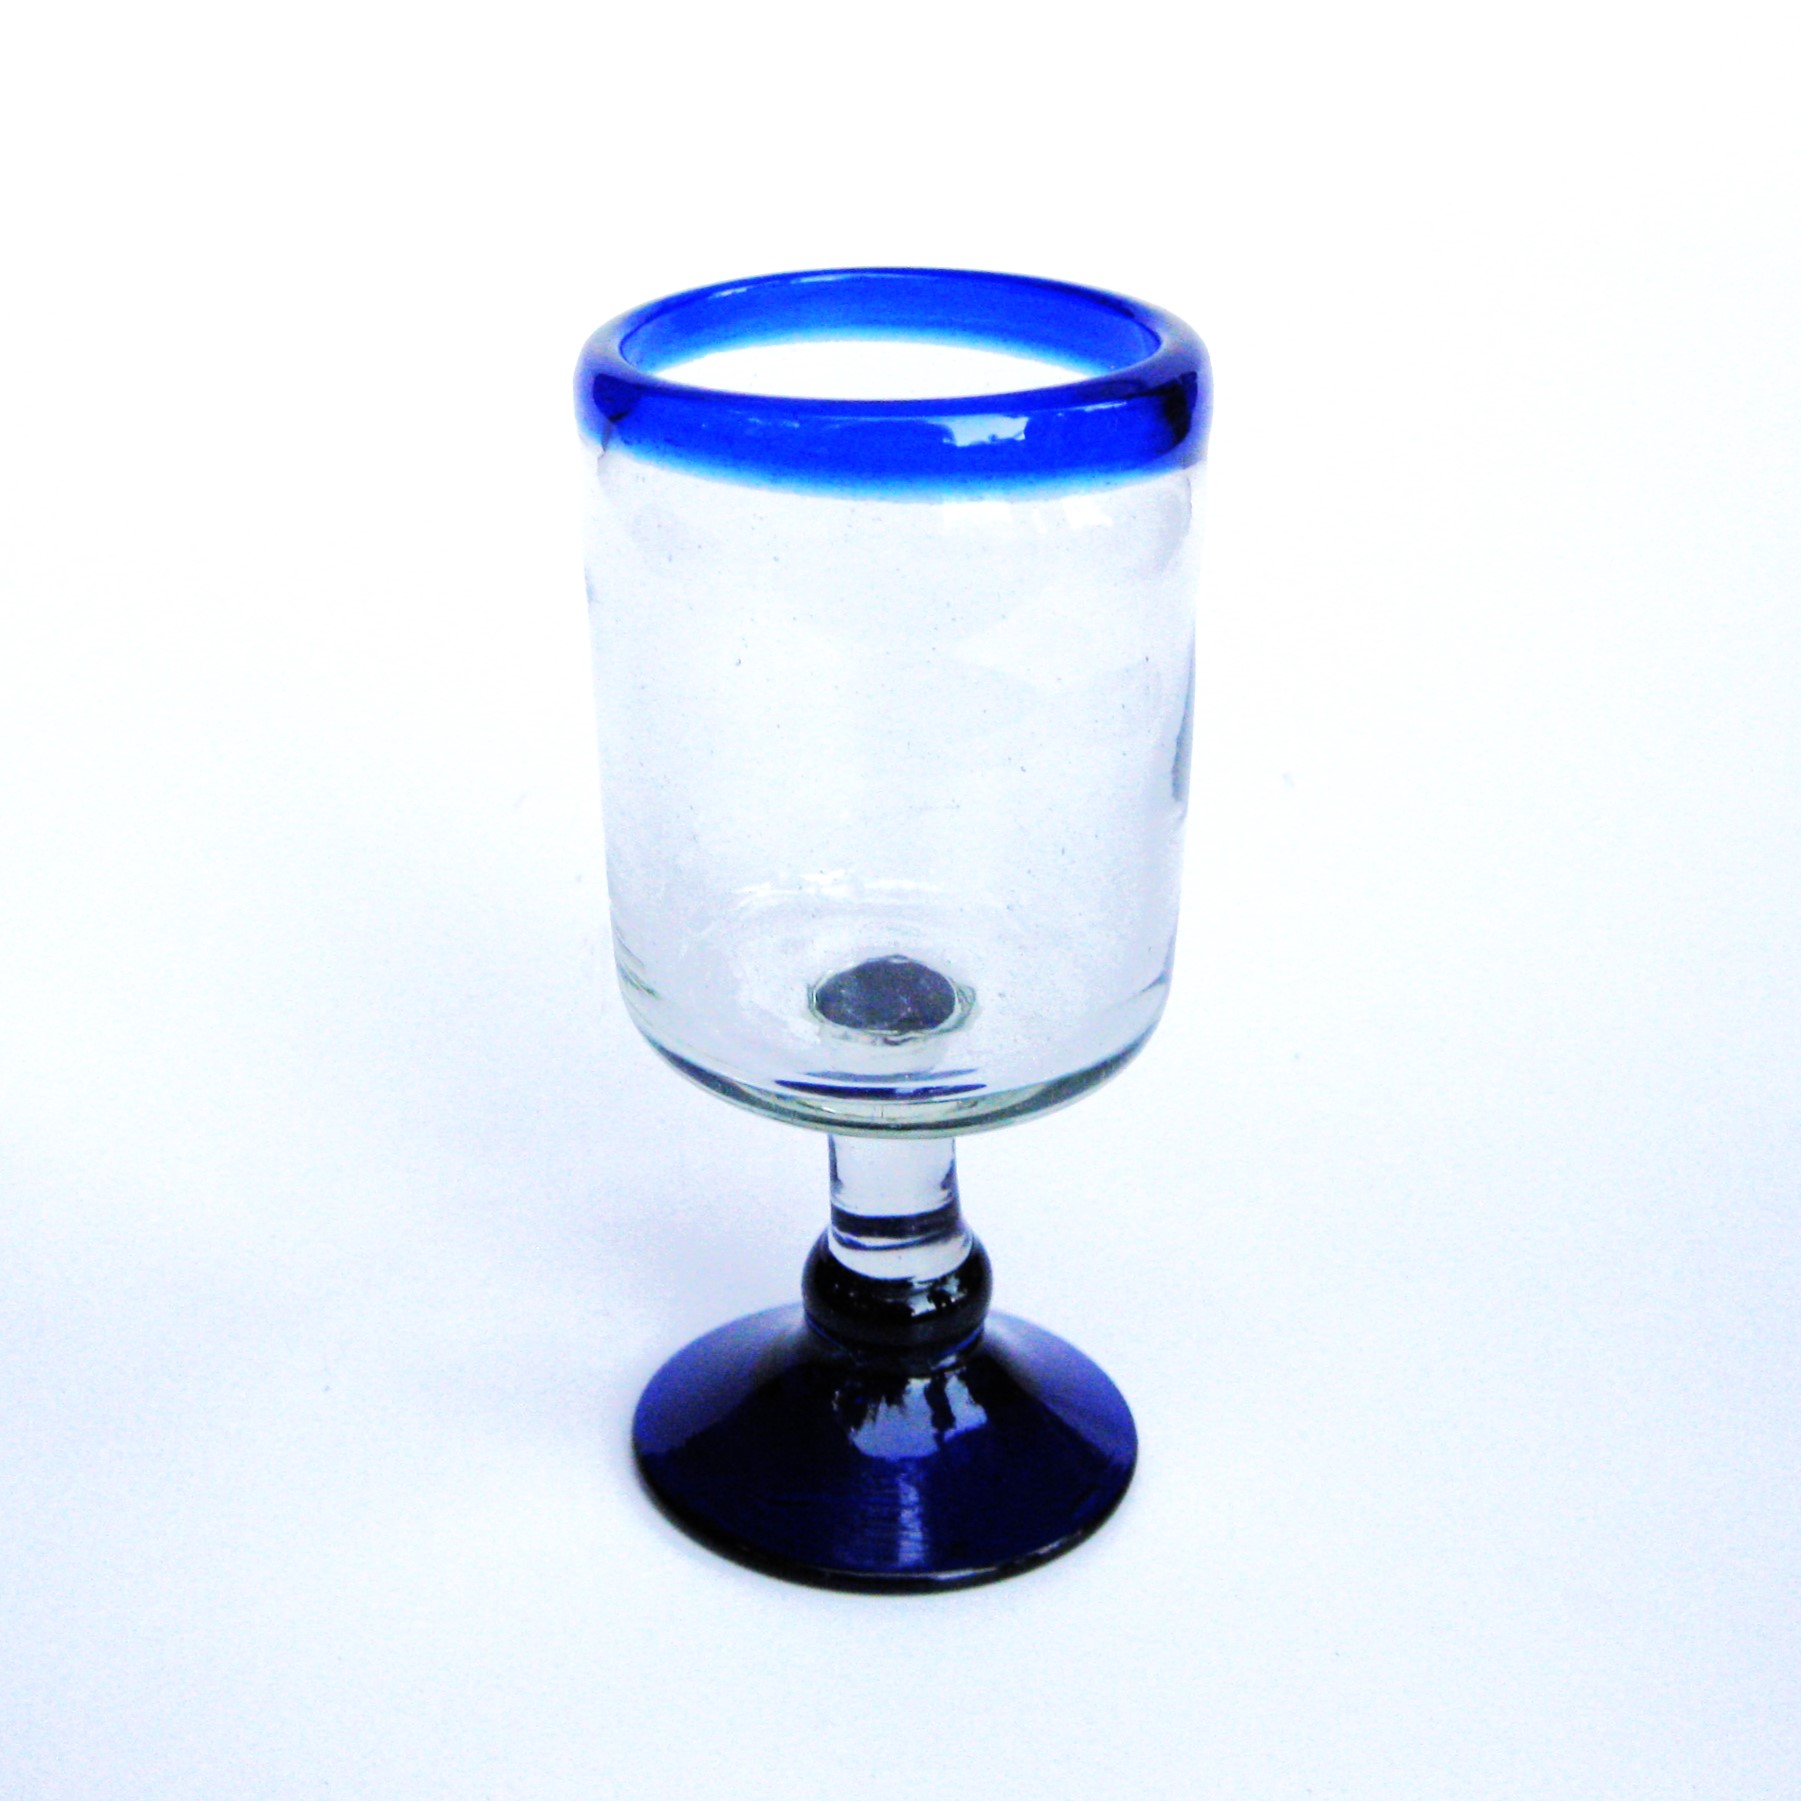 copas cuadradas para vino pequeas con borde azul cobalto, 8 oz, Vidrio Reciclado, Libre de Plomo y Toxinas